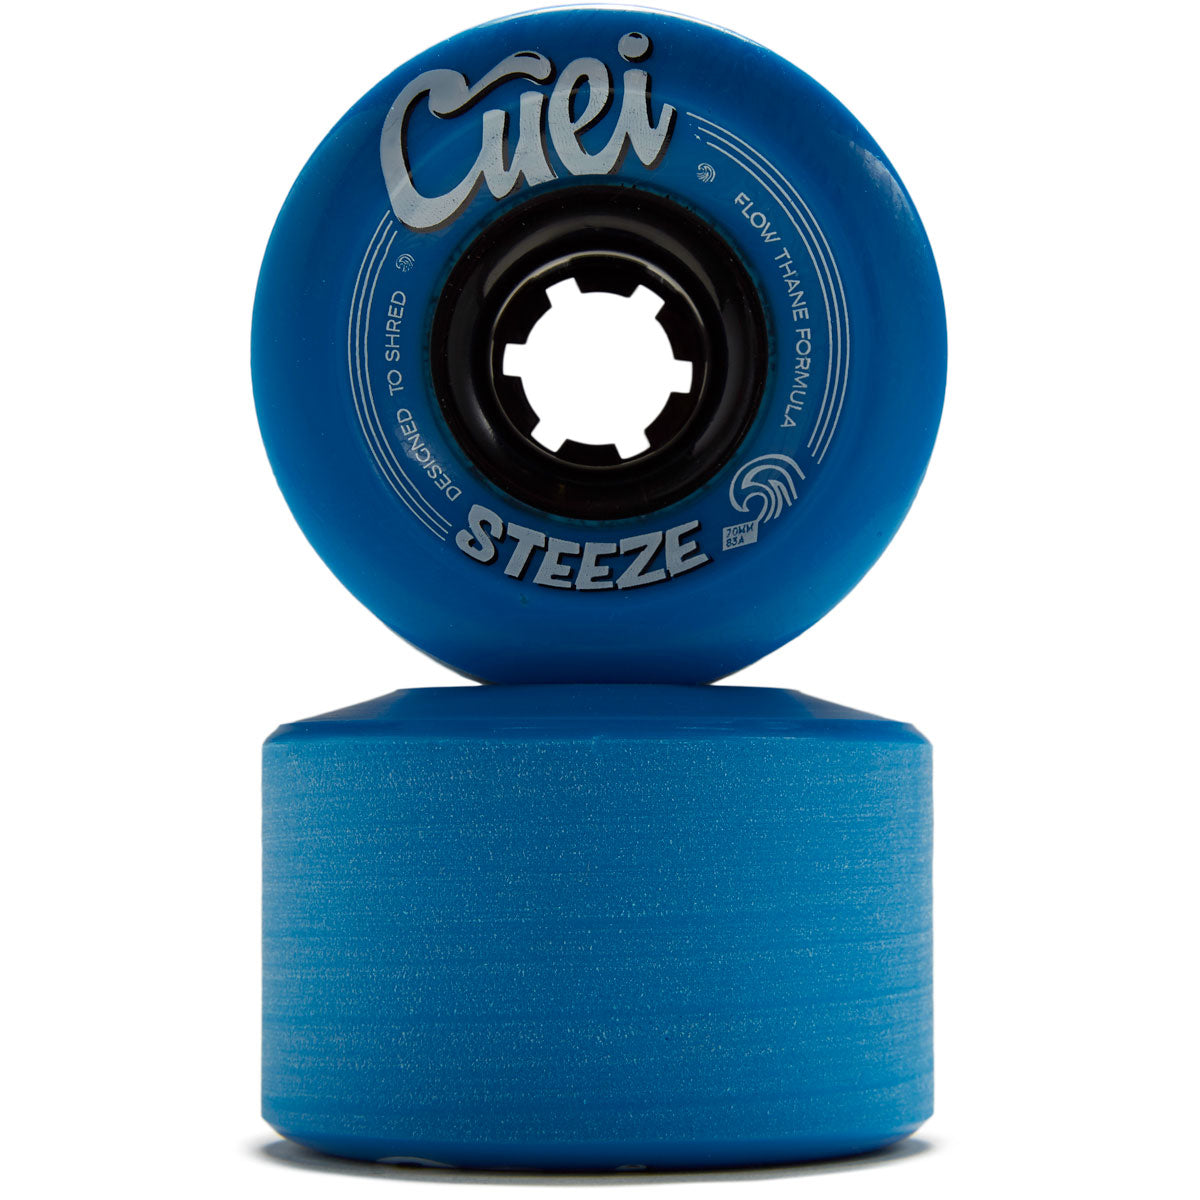 Cuei Steeze Freeride 83a Stoneground Longboard Wheels - Blue - 70mm image 2